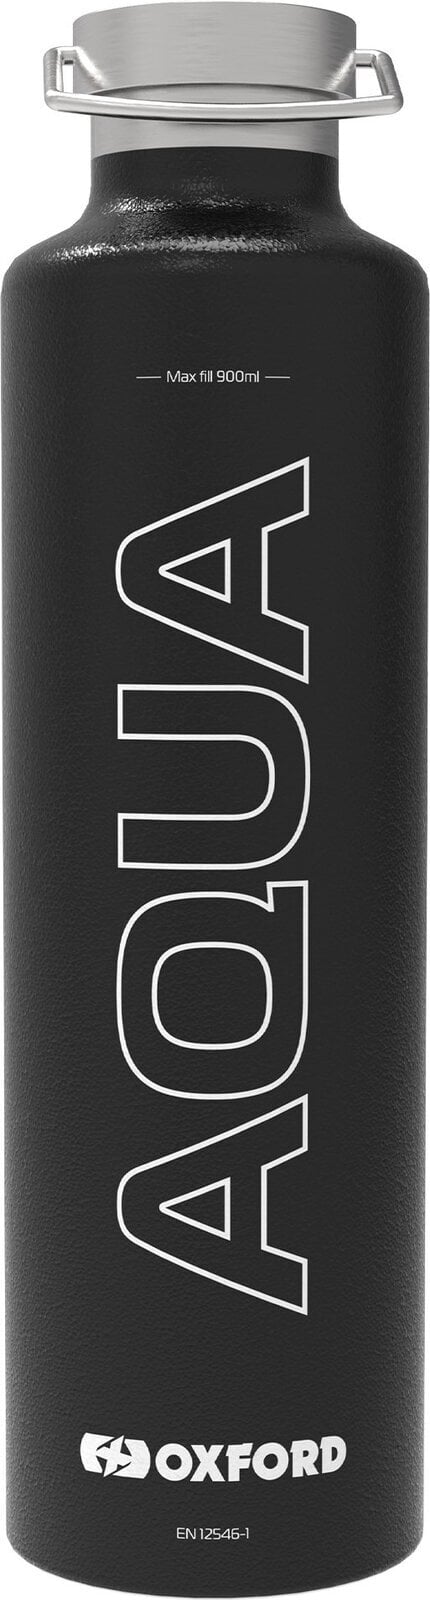 Autre accessoire pour moto Oxford Aqua Insulated Flask